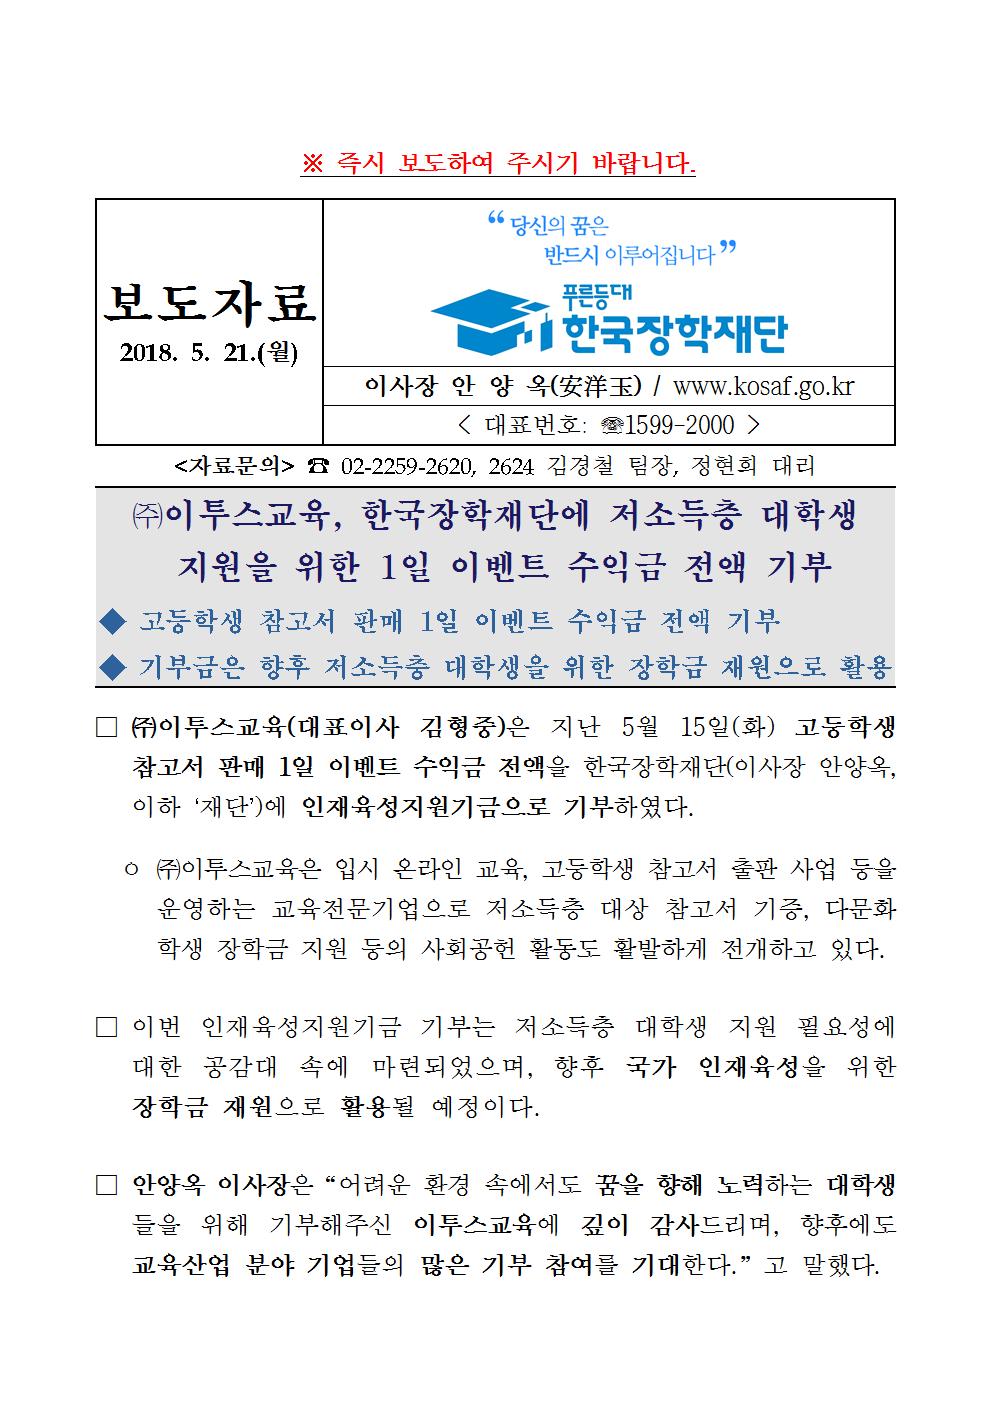 05-21(월)[보도자료] (주)이투스교육, 한국장학재단에 저소득층 대학생 지원을 위한 1일 이벤트 수익금 전액 기부001.jpg